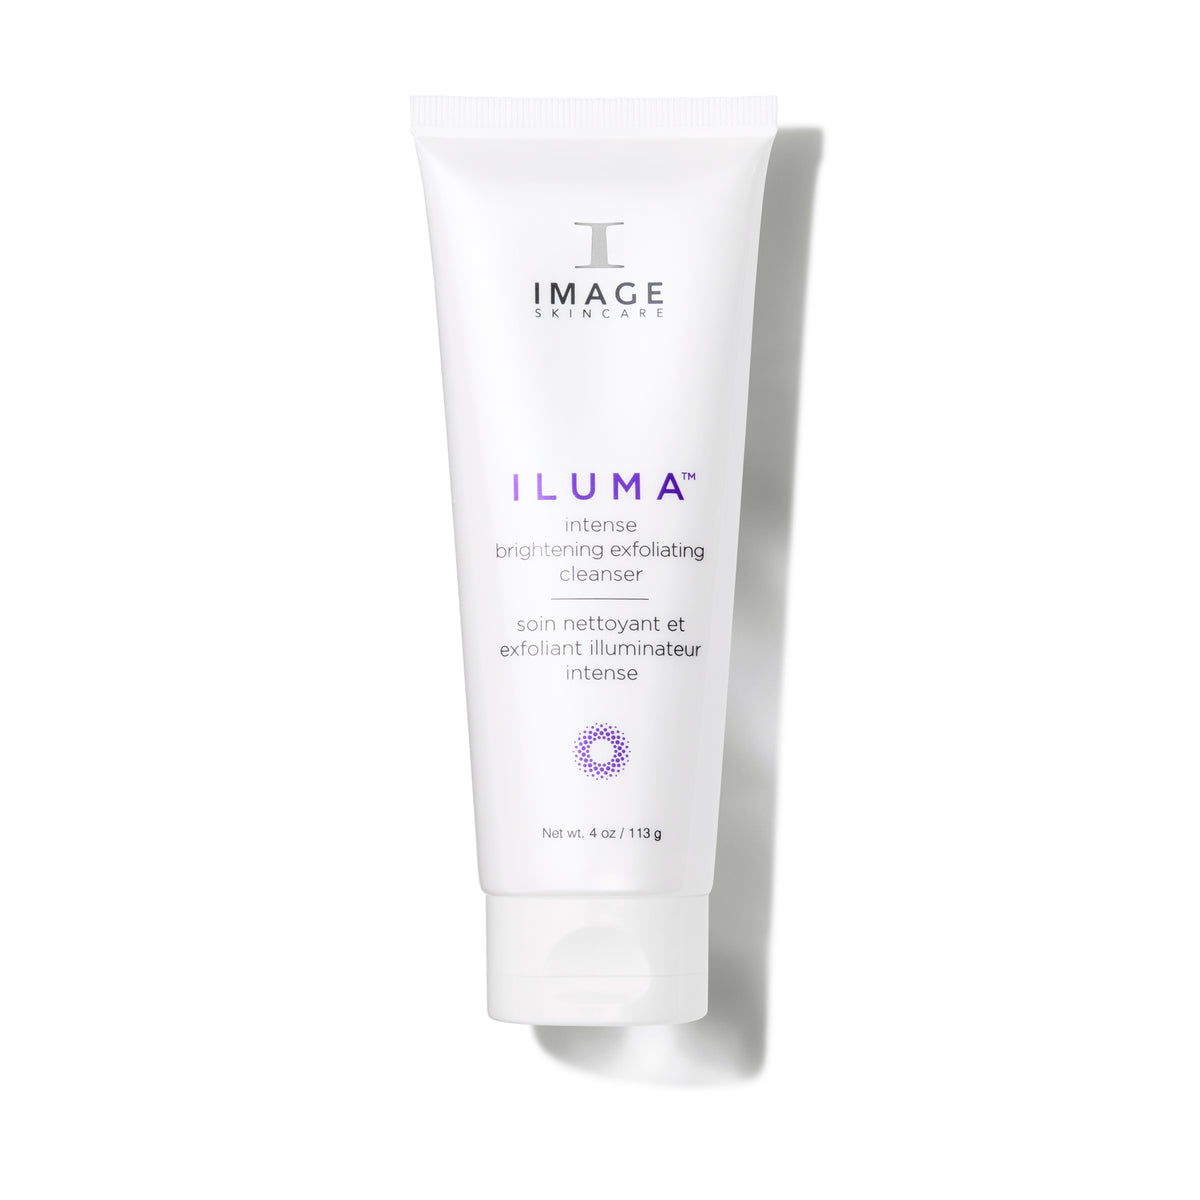 ILUMA® intense brightening exfoliating cleanser